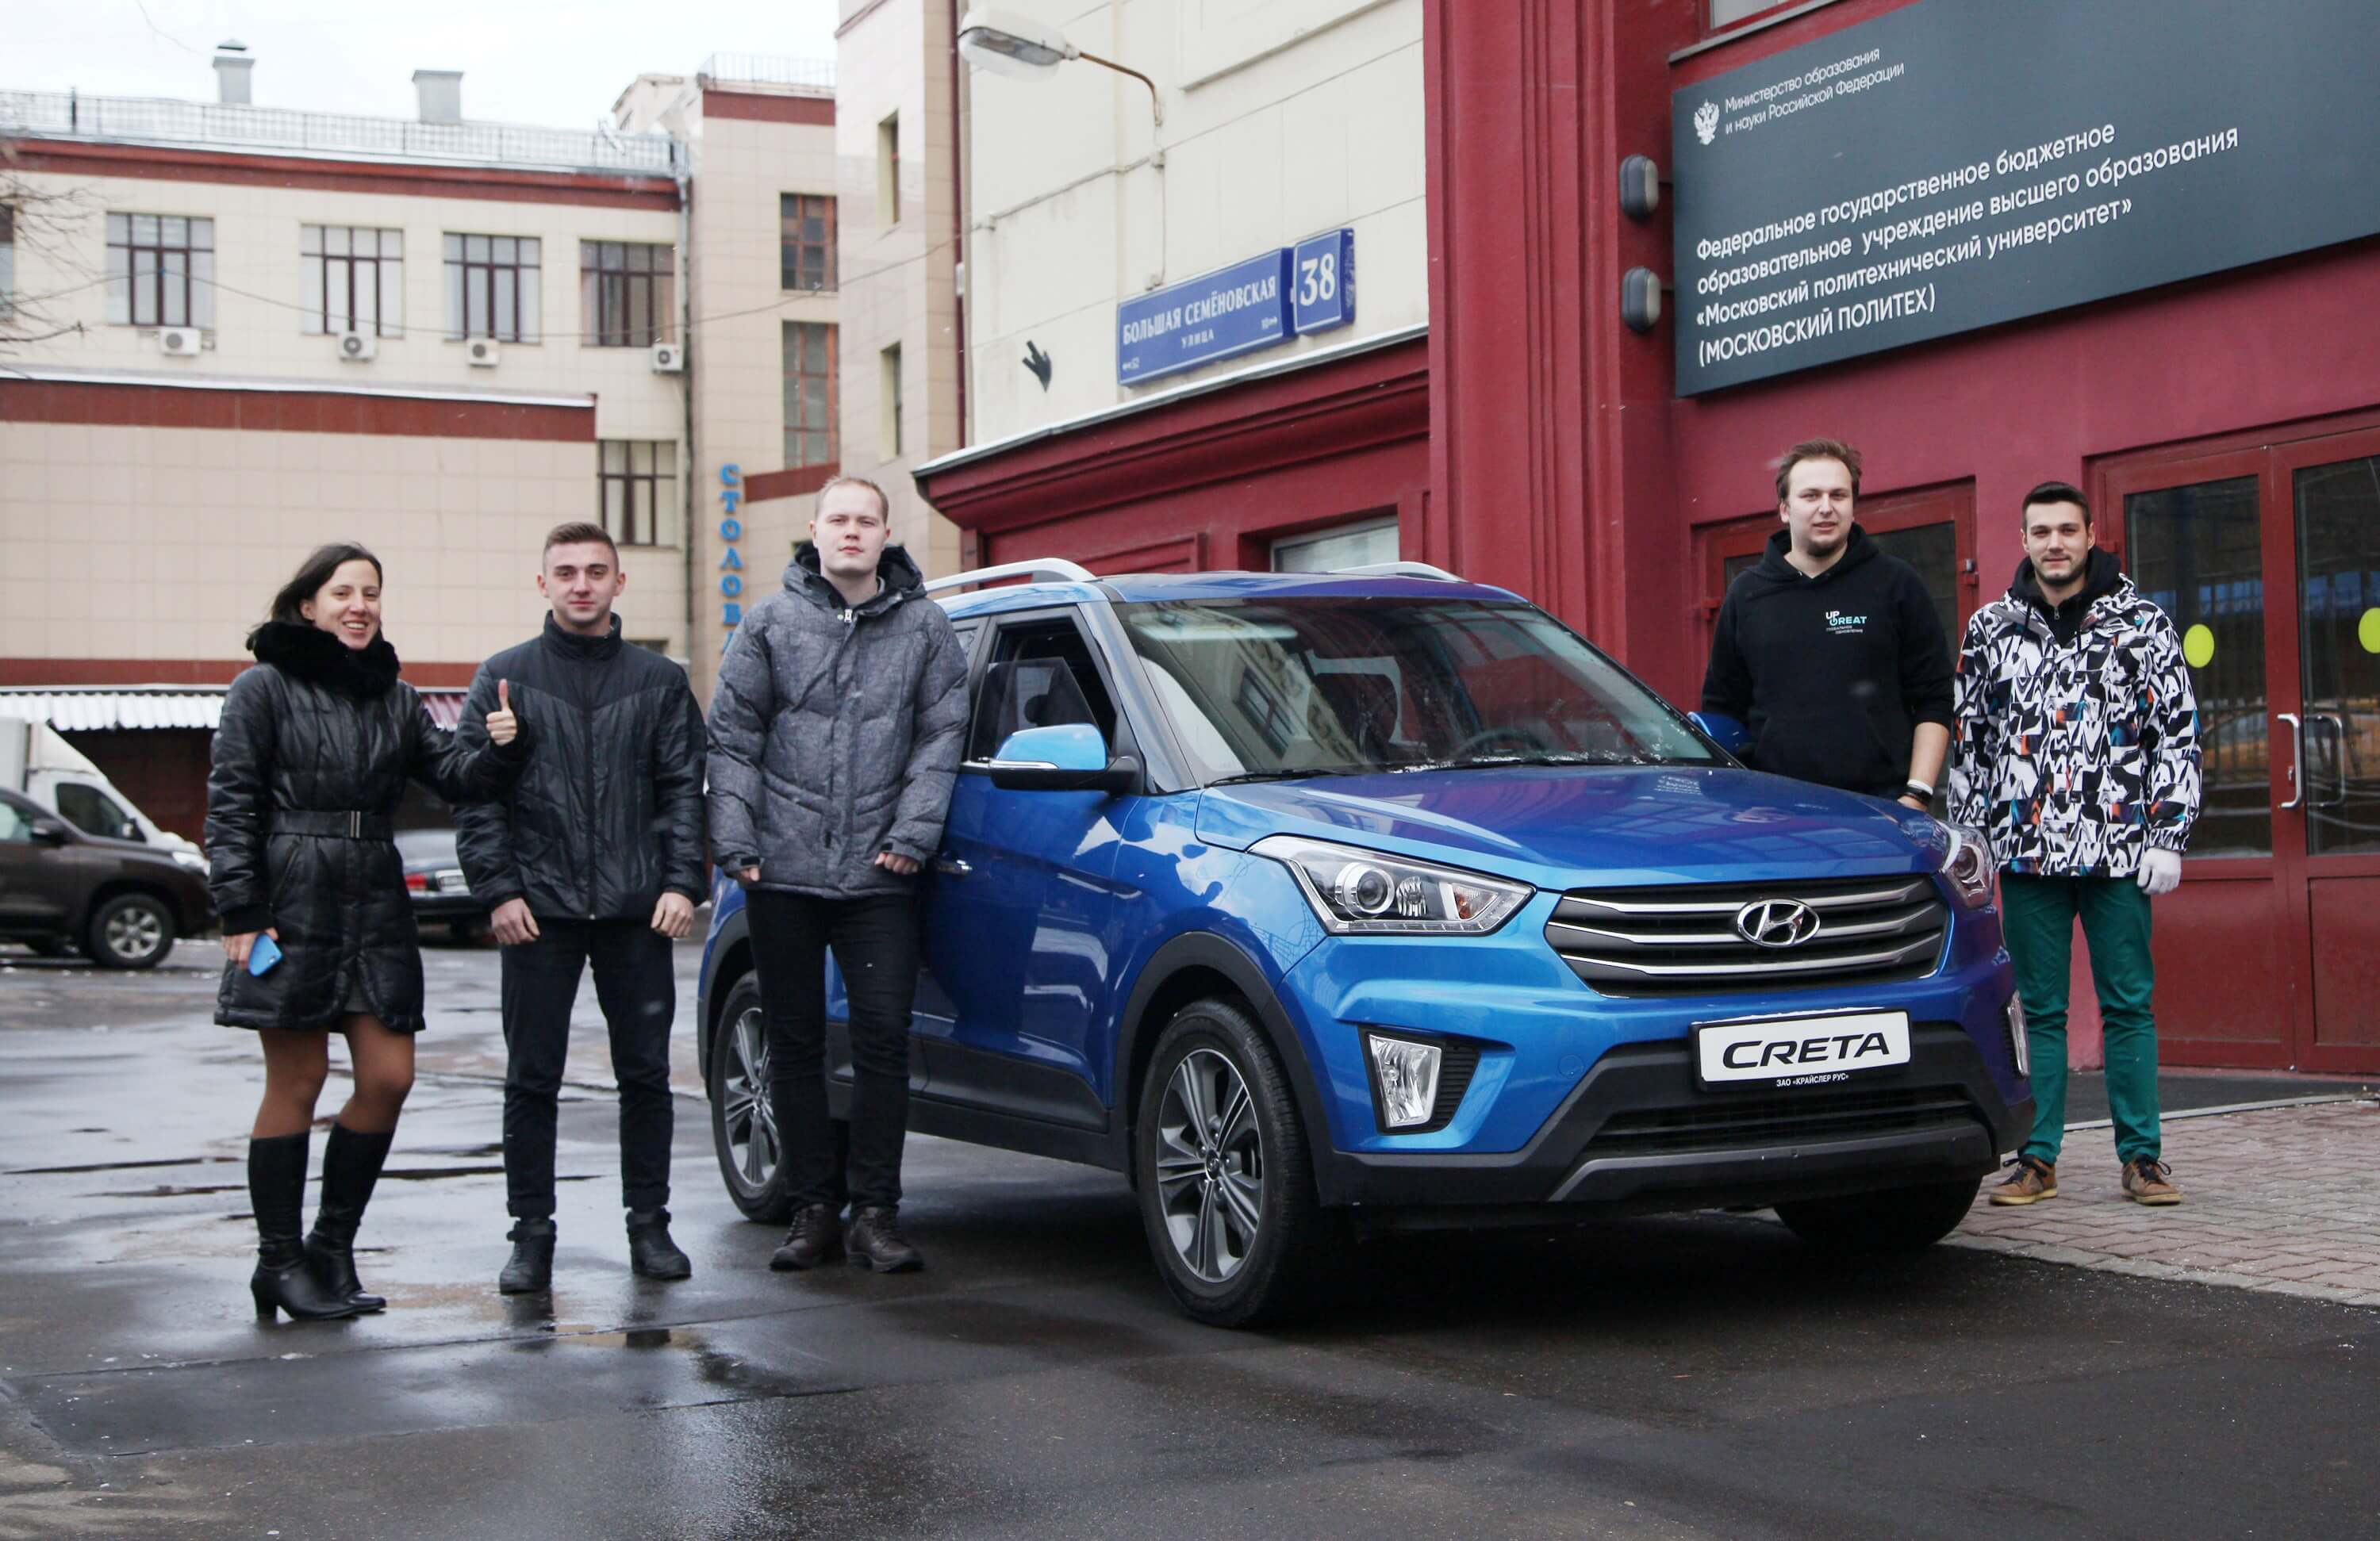 Студенты Московского политеха создадут беспилотный автомобиль на базе Hyundai Creta